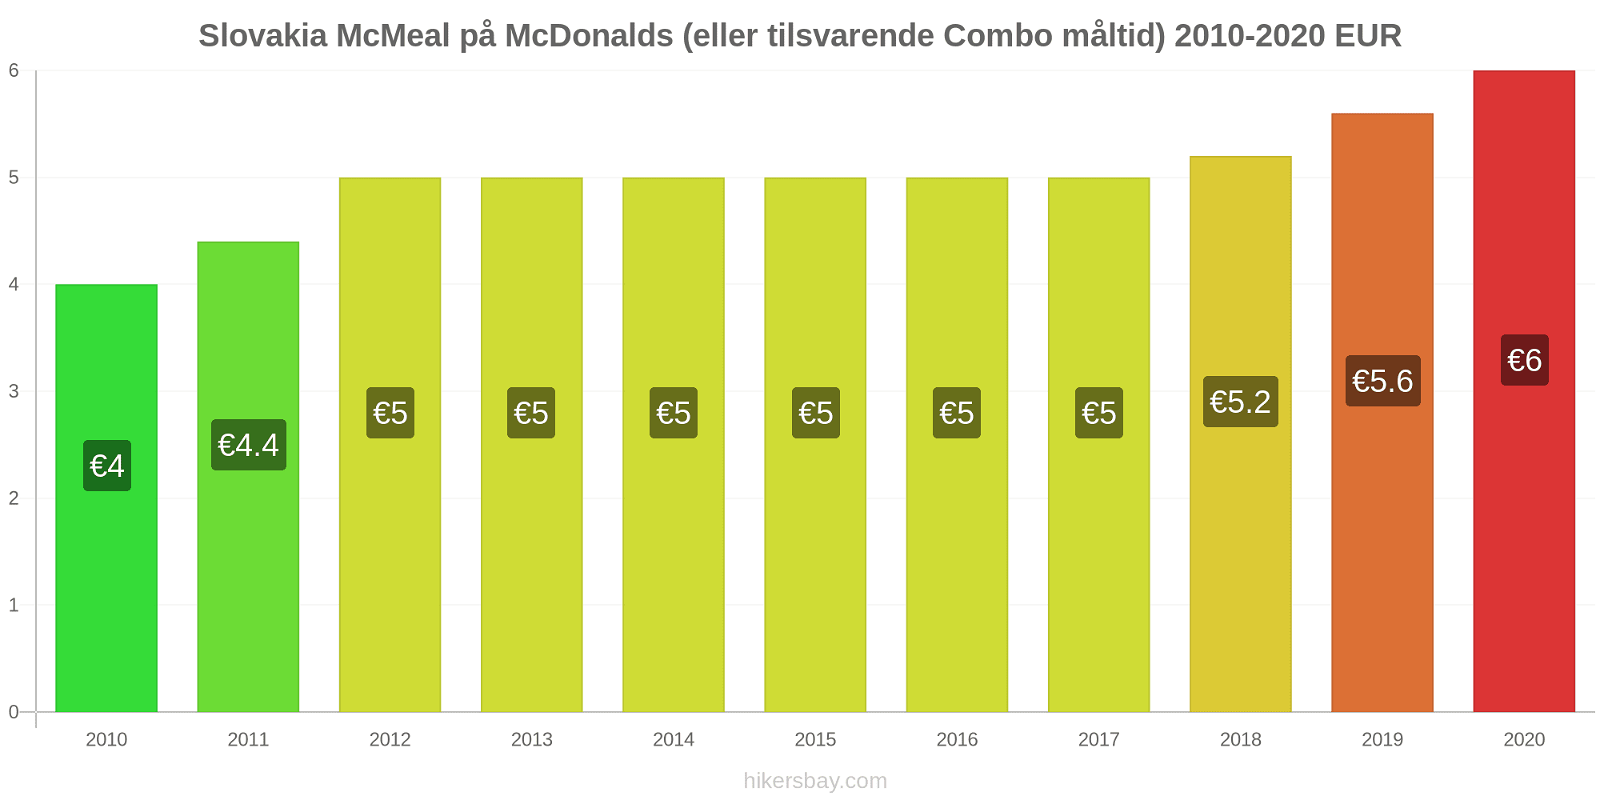 Slovakia prisendringer McMeal på McDonalds (eller tilsvarende Combo måltid) hikersbay.com